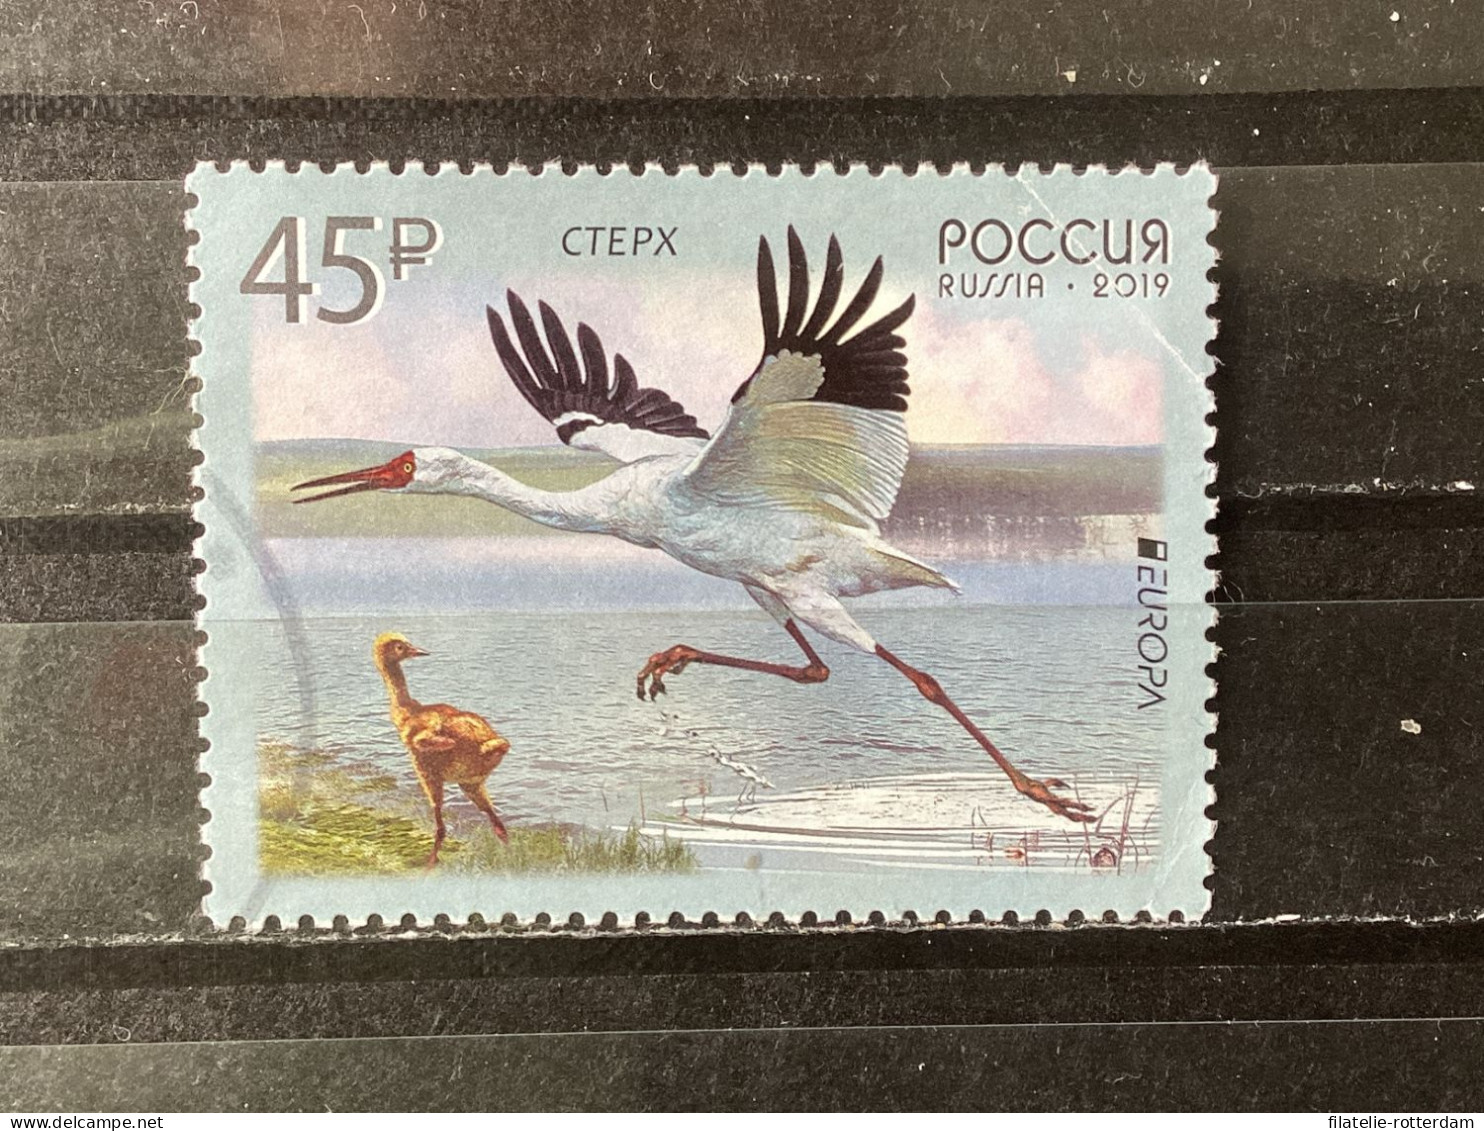 Russia / Rusland - Birds (45) 2019 - Usados